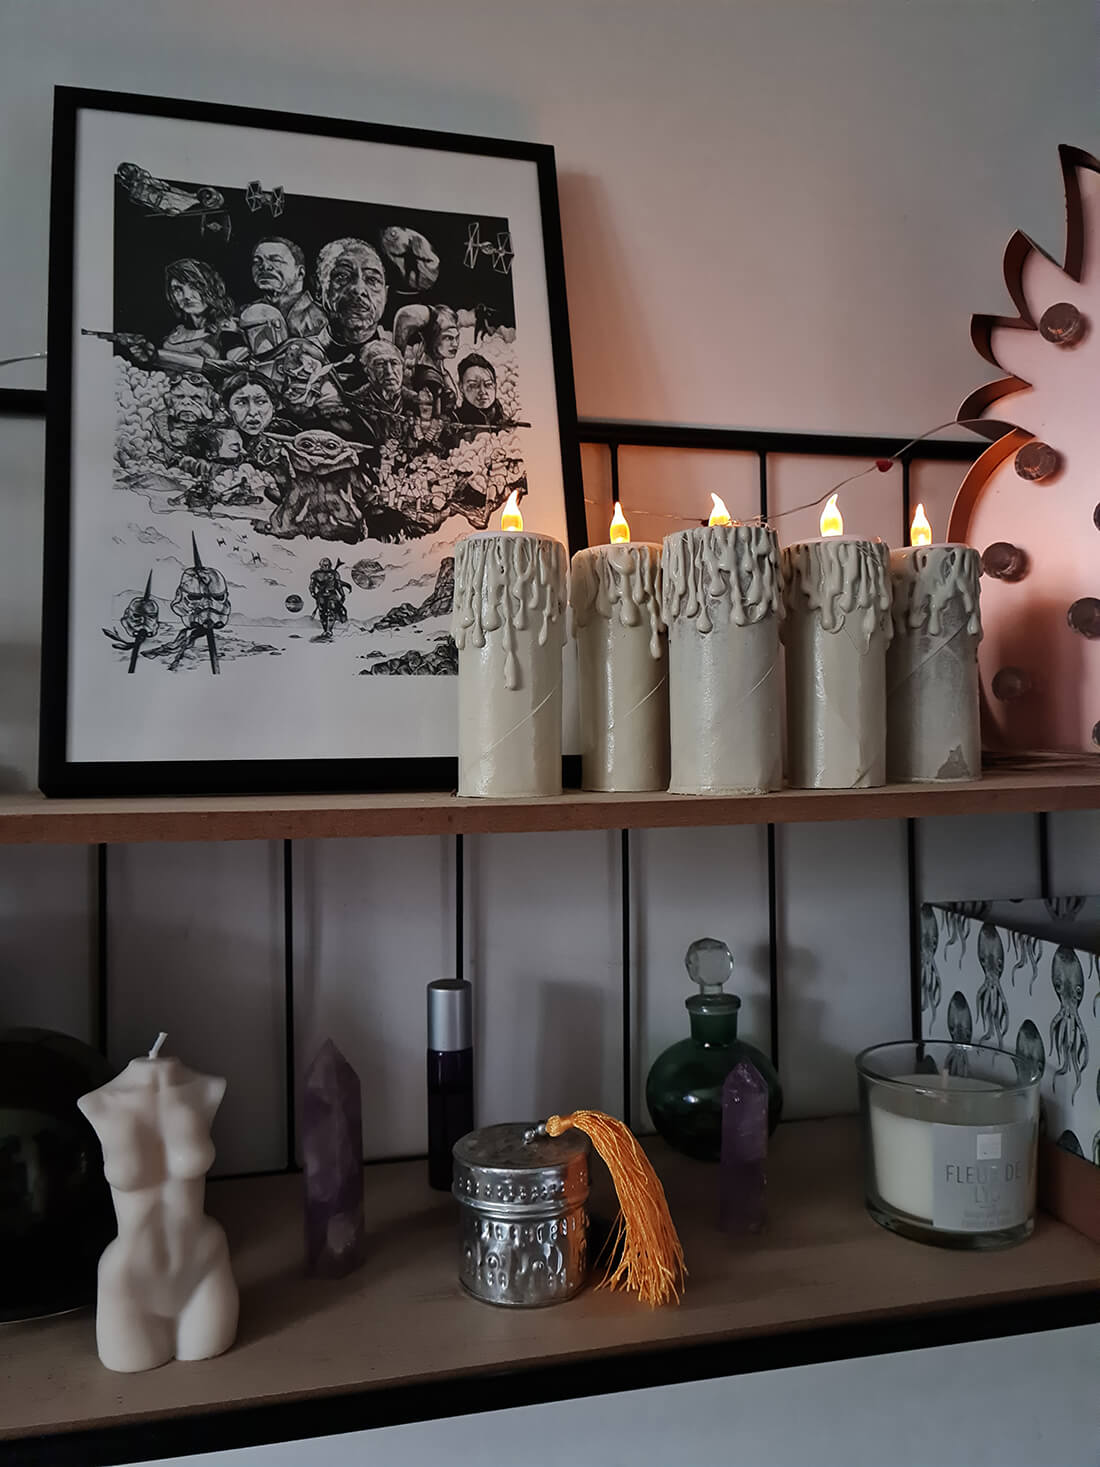 20211018 134504 - DIY : fabriquer des bougies écologiques pour décorer durant les fêtes de fin d'année